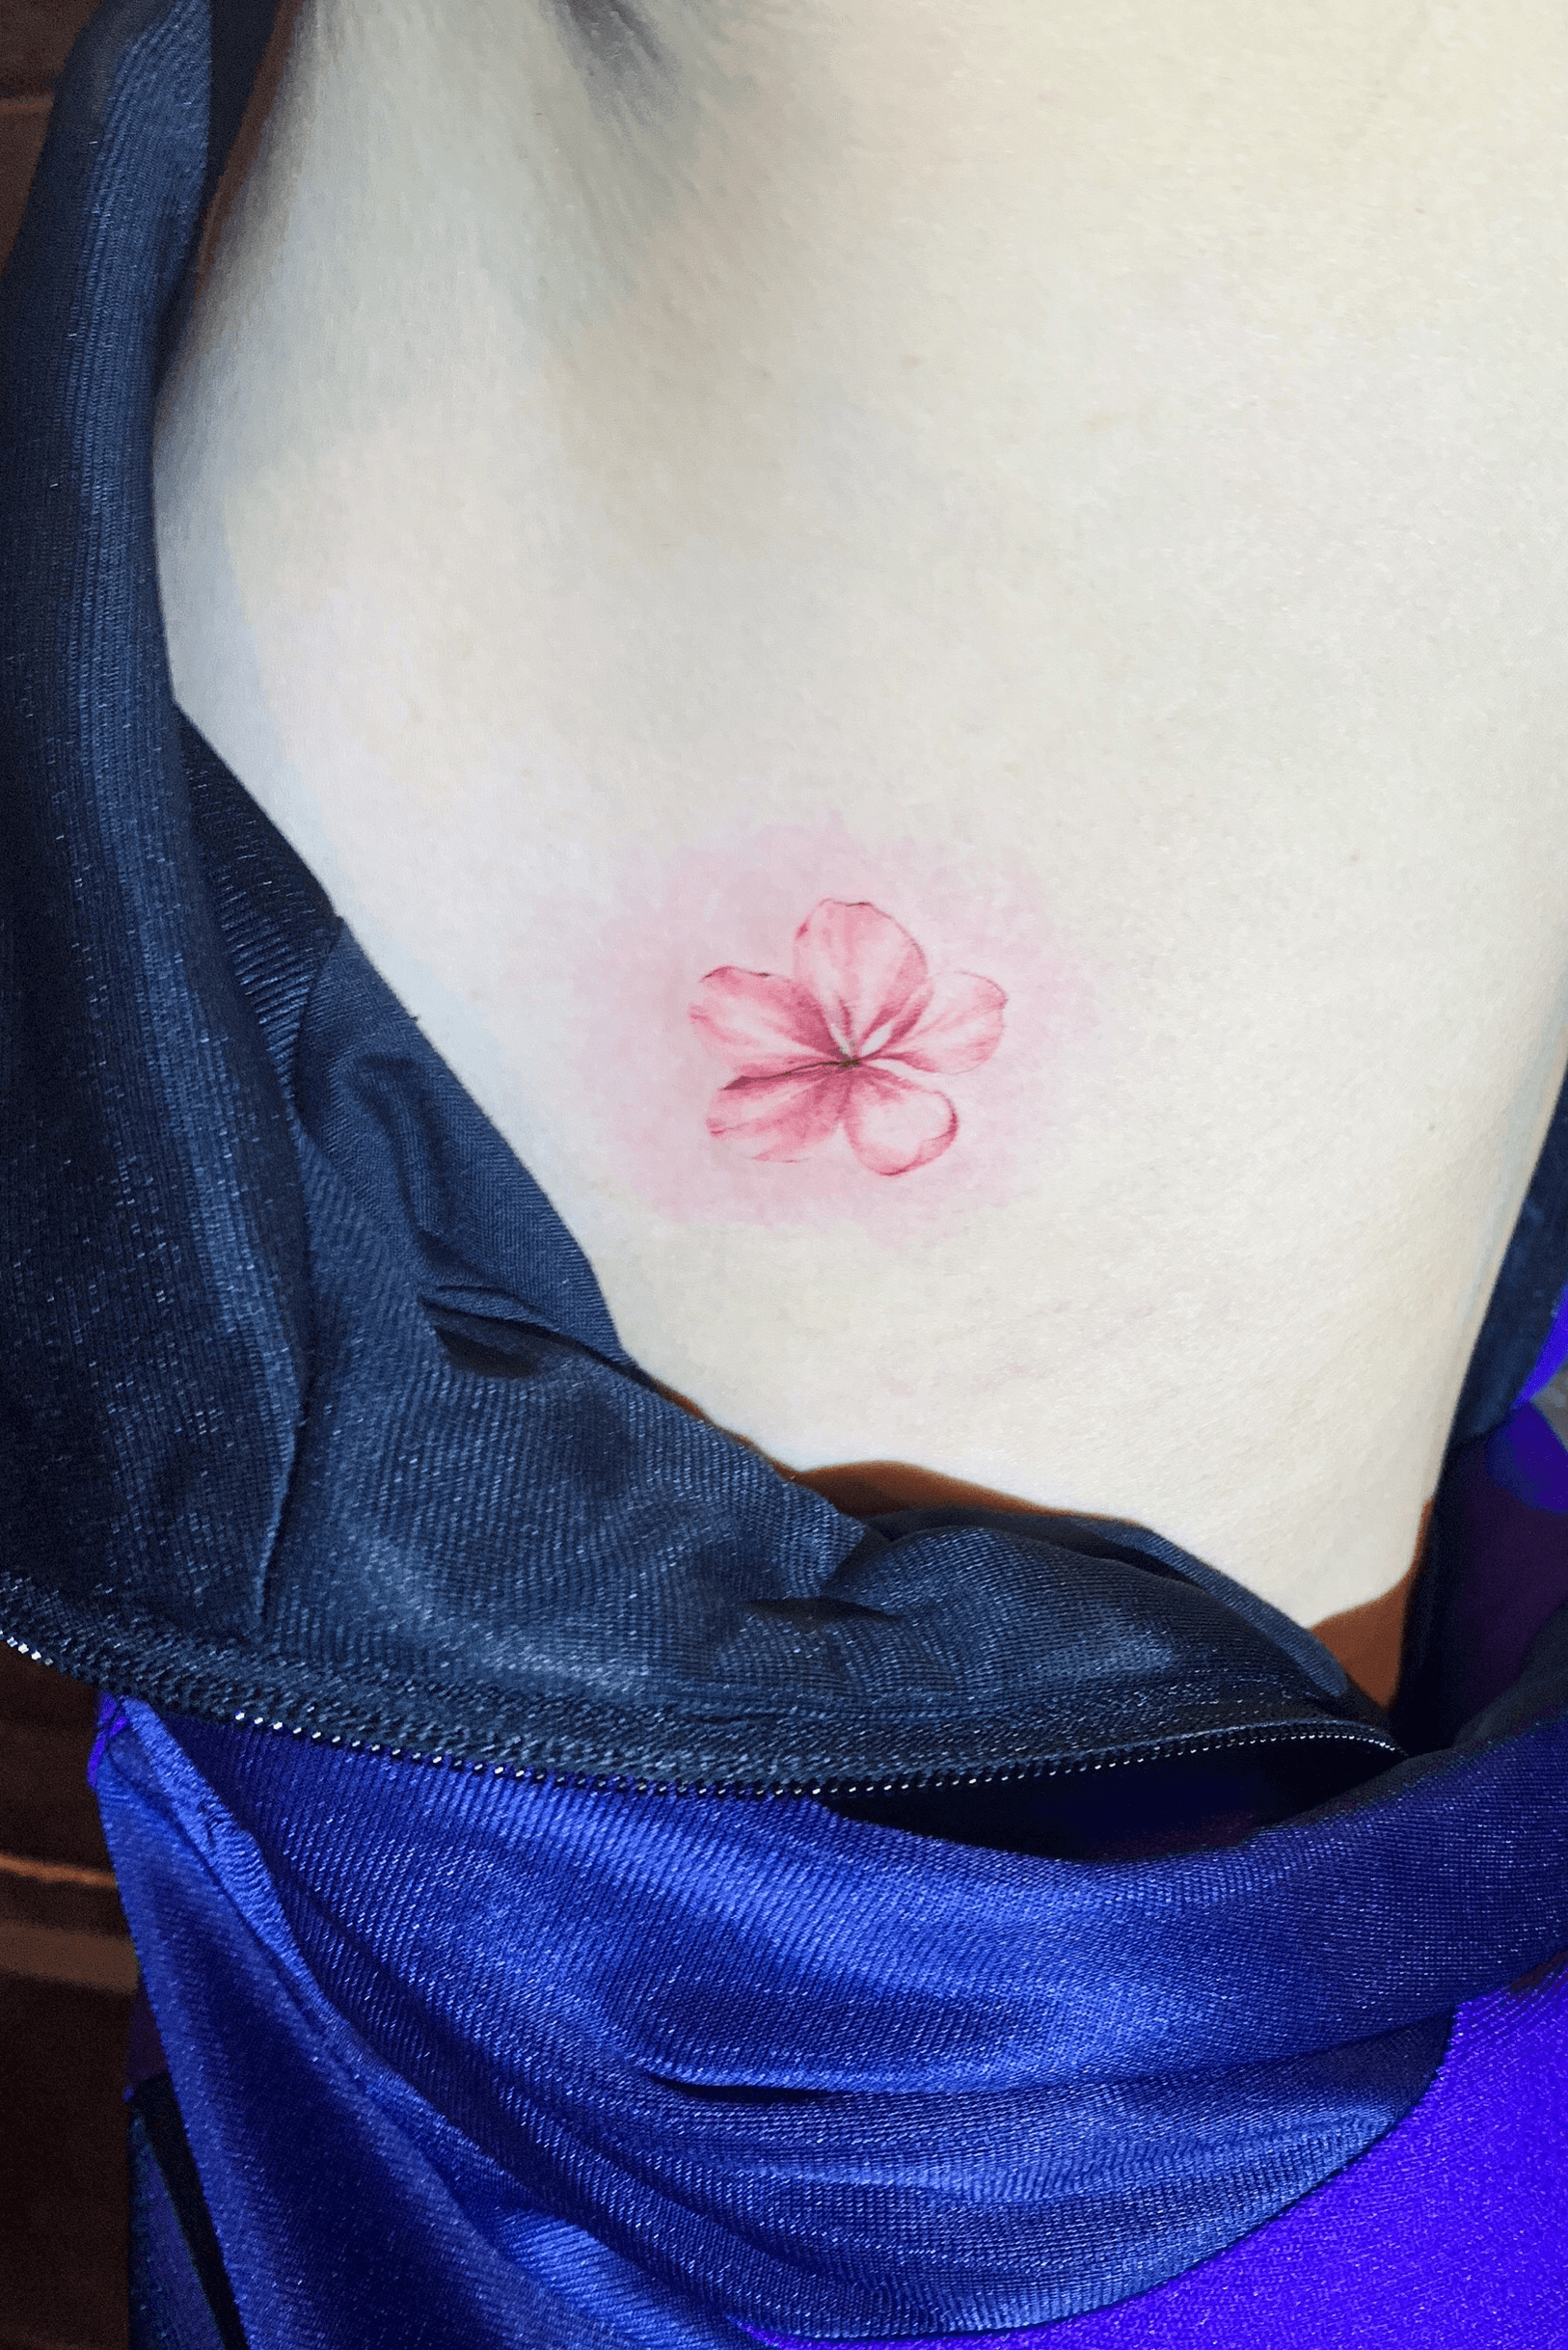 Plum Blossoms Tattoos Design Ideas